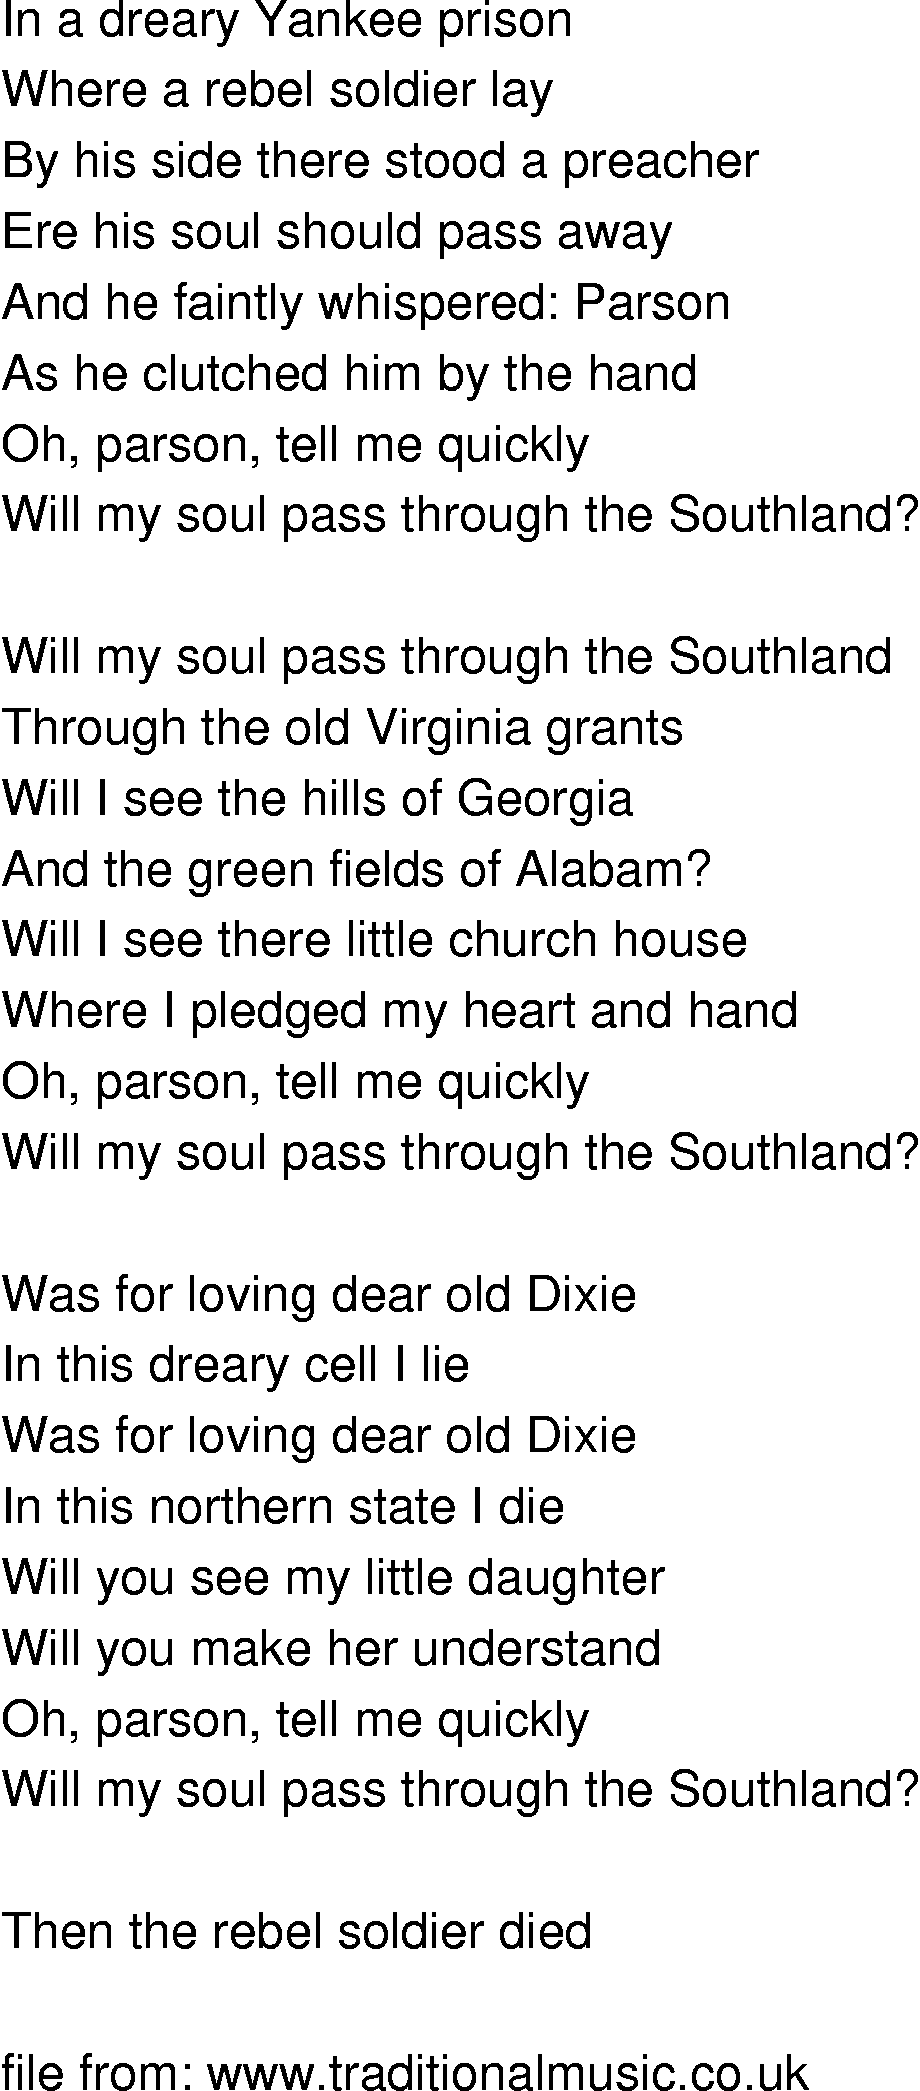 Old-Time (oldtimey) Song Lyrics - legend of the rebel soldier